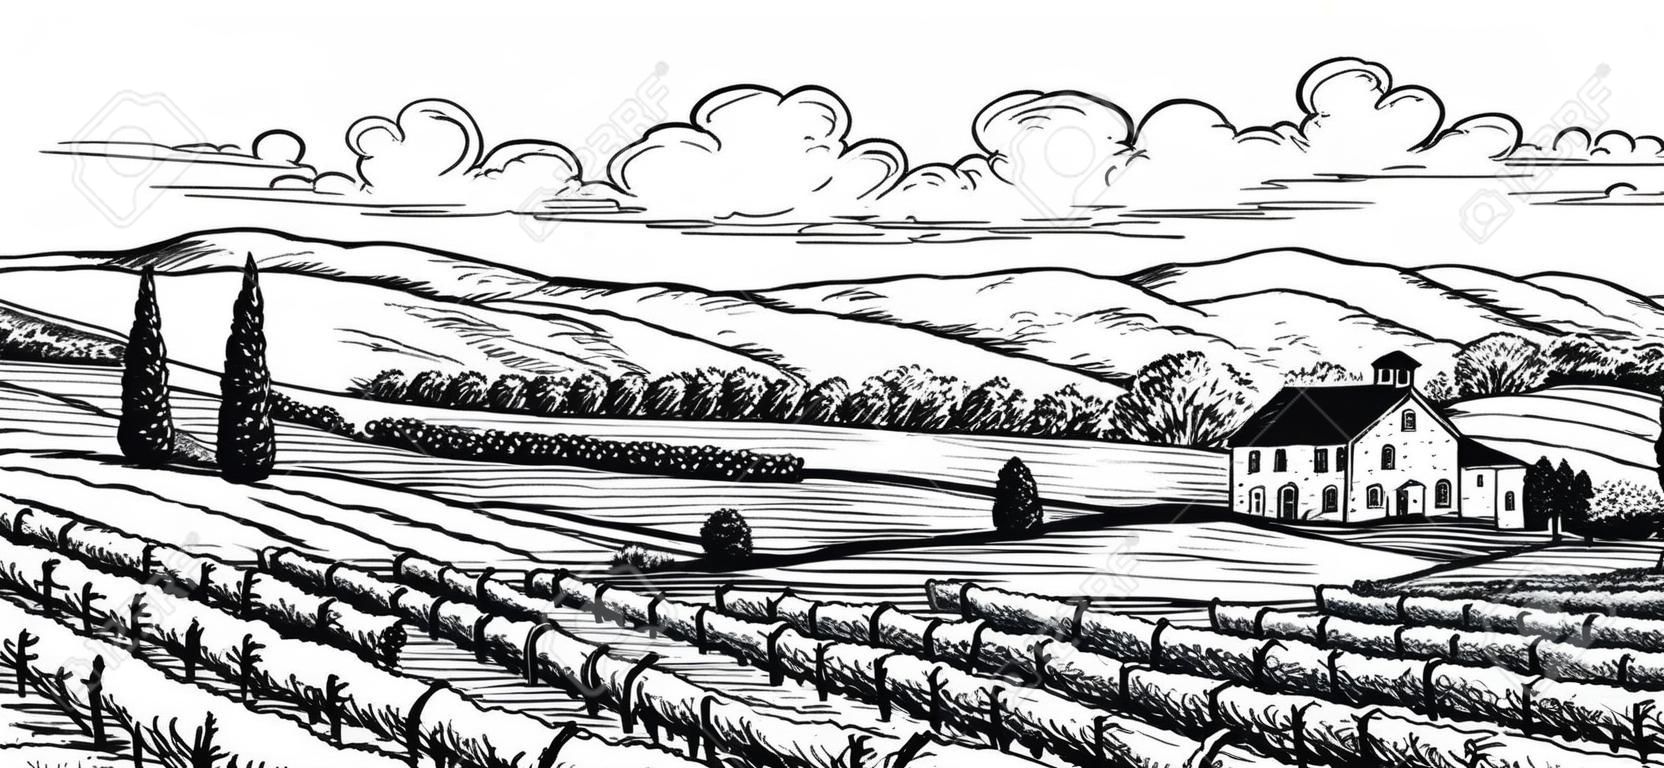 Dibujado a mano paisaje de viñedos. Aislado en el fondo blanco. ilustración vectorial de estilo vintage.